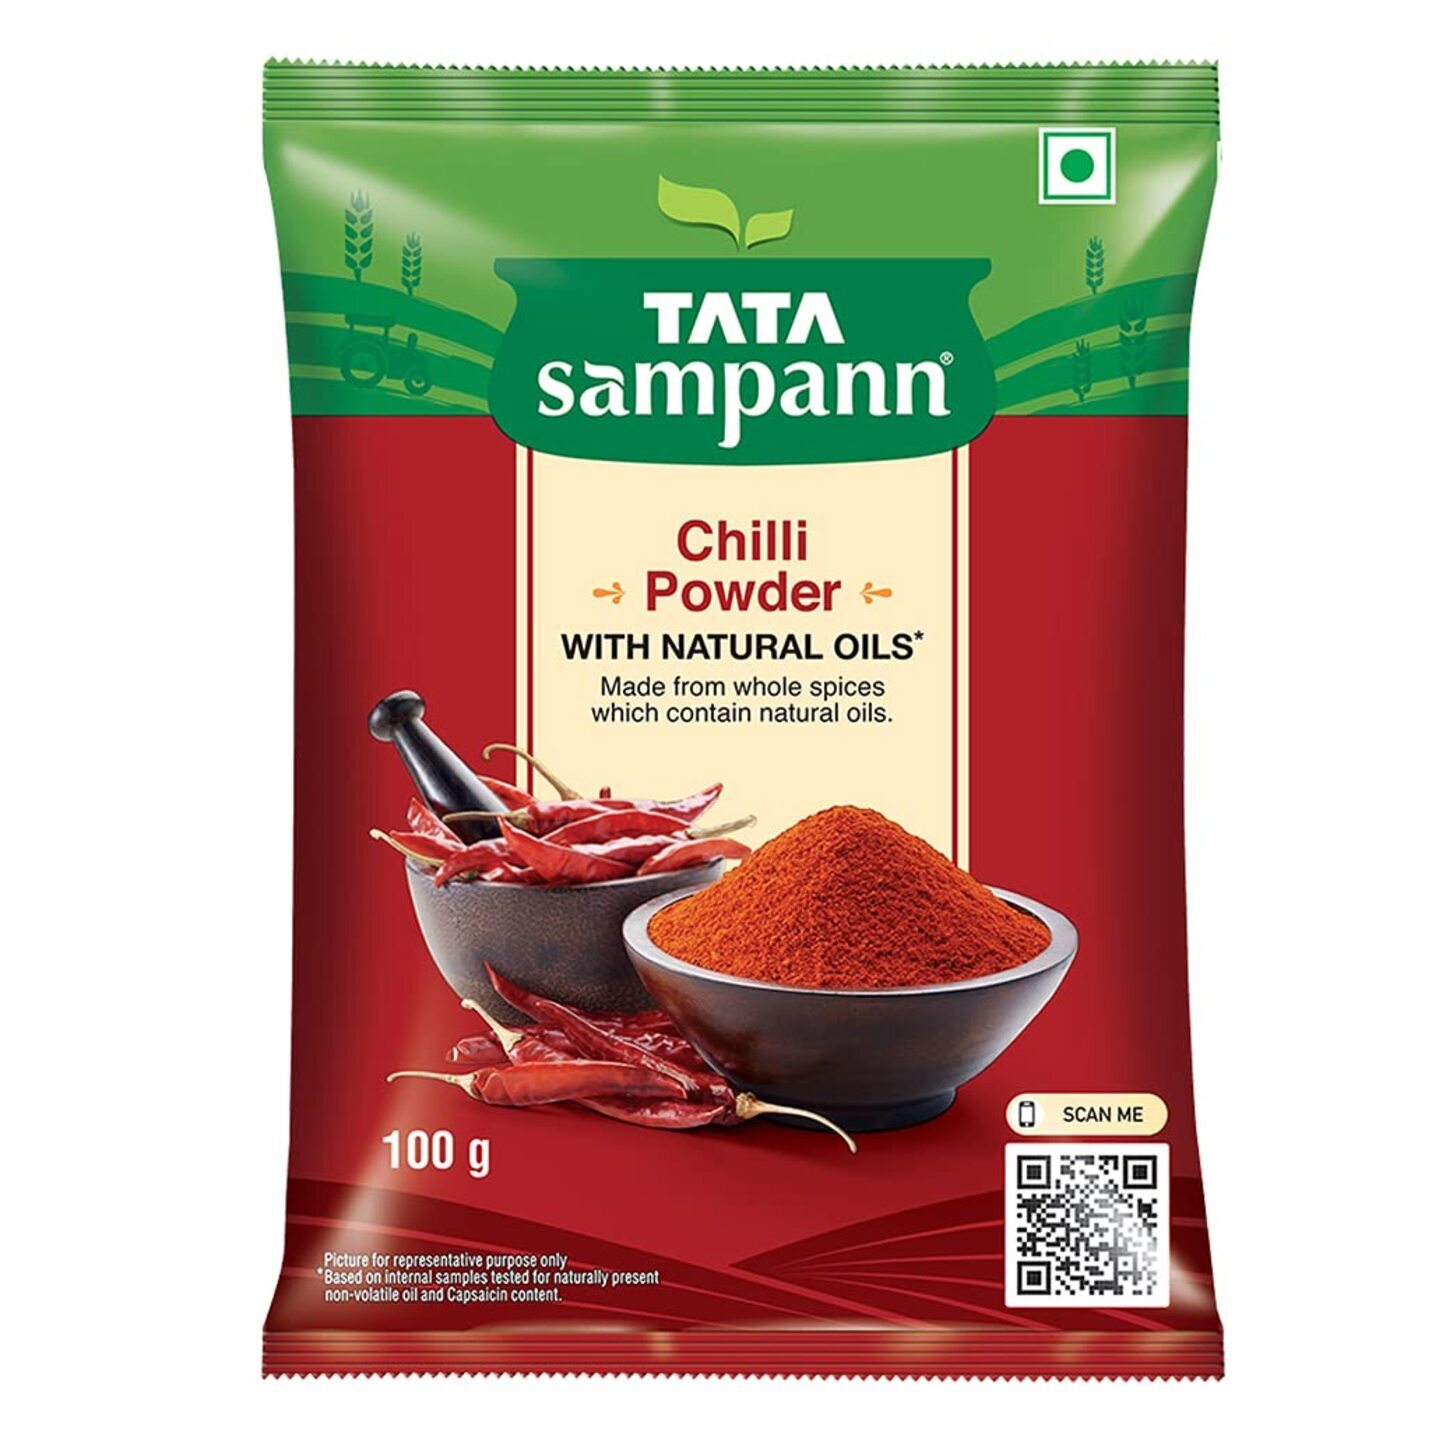 Tata Sampann Chilli Powder With Natural Oils, 100g